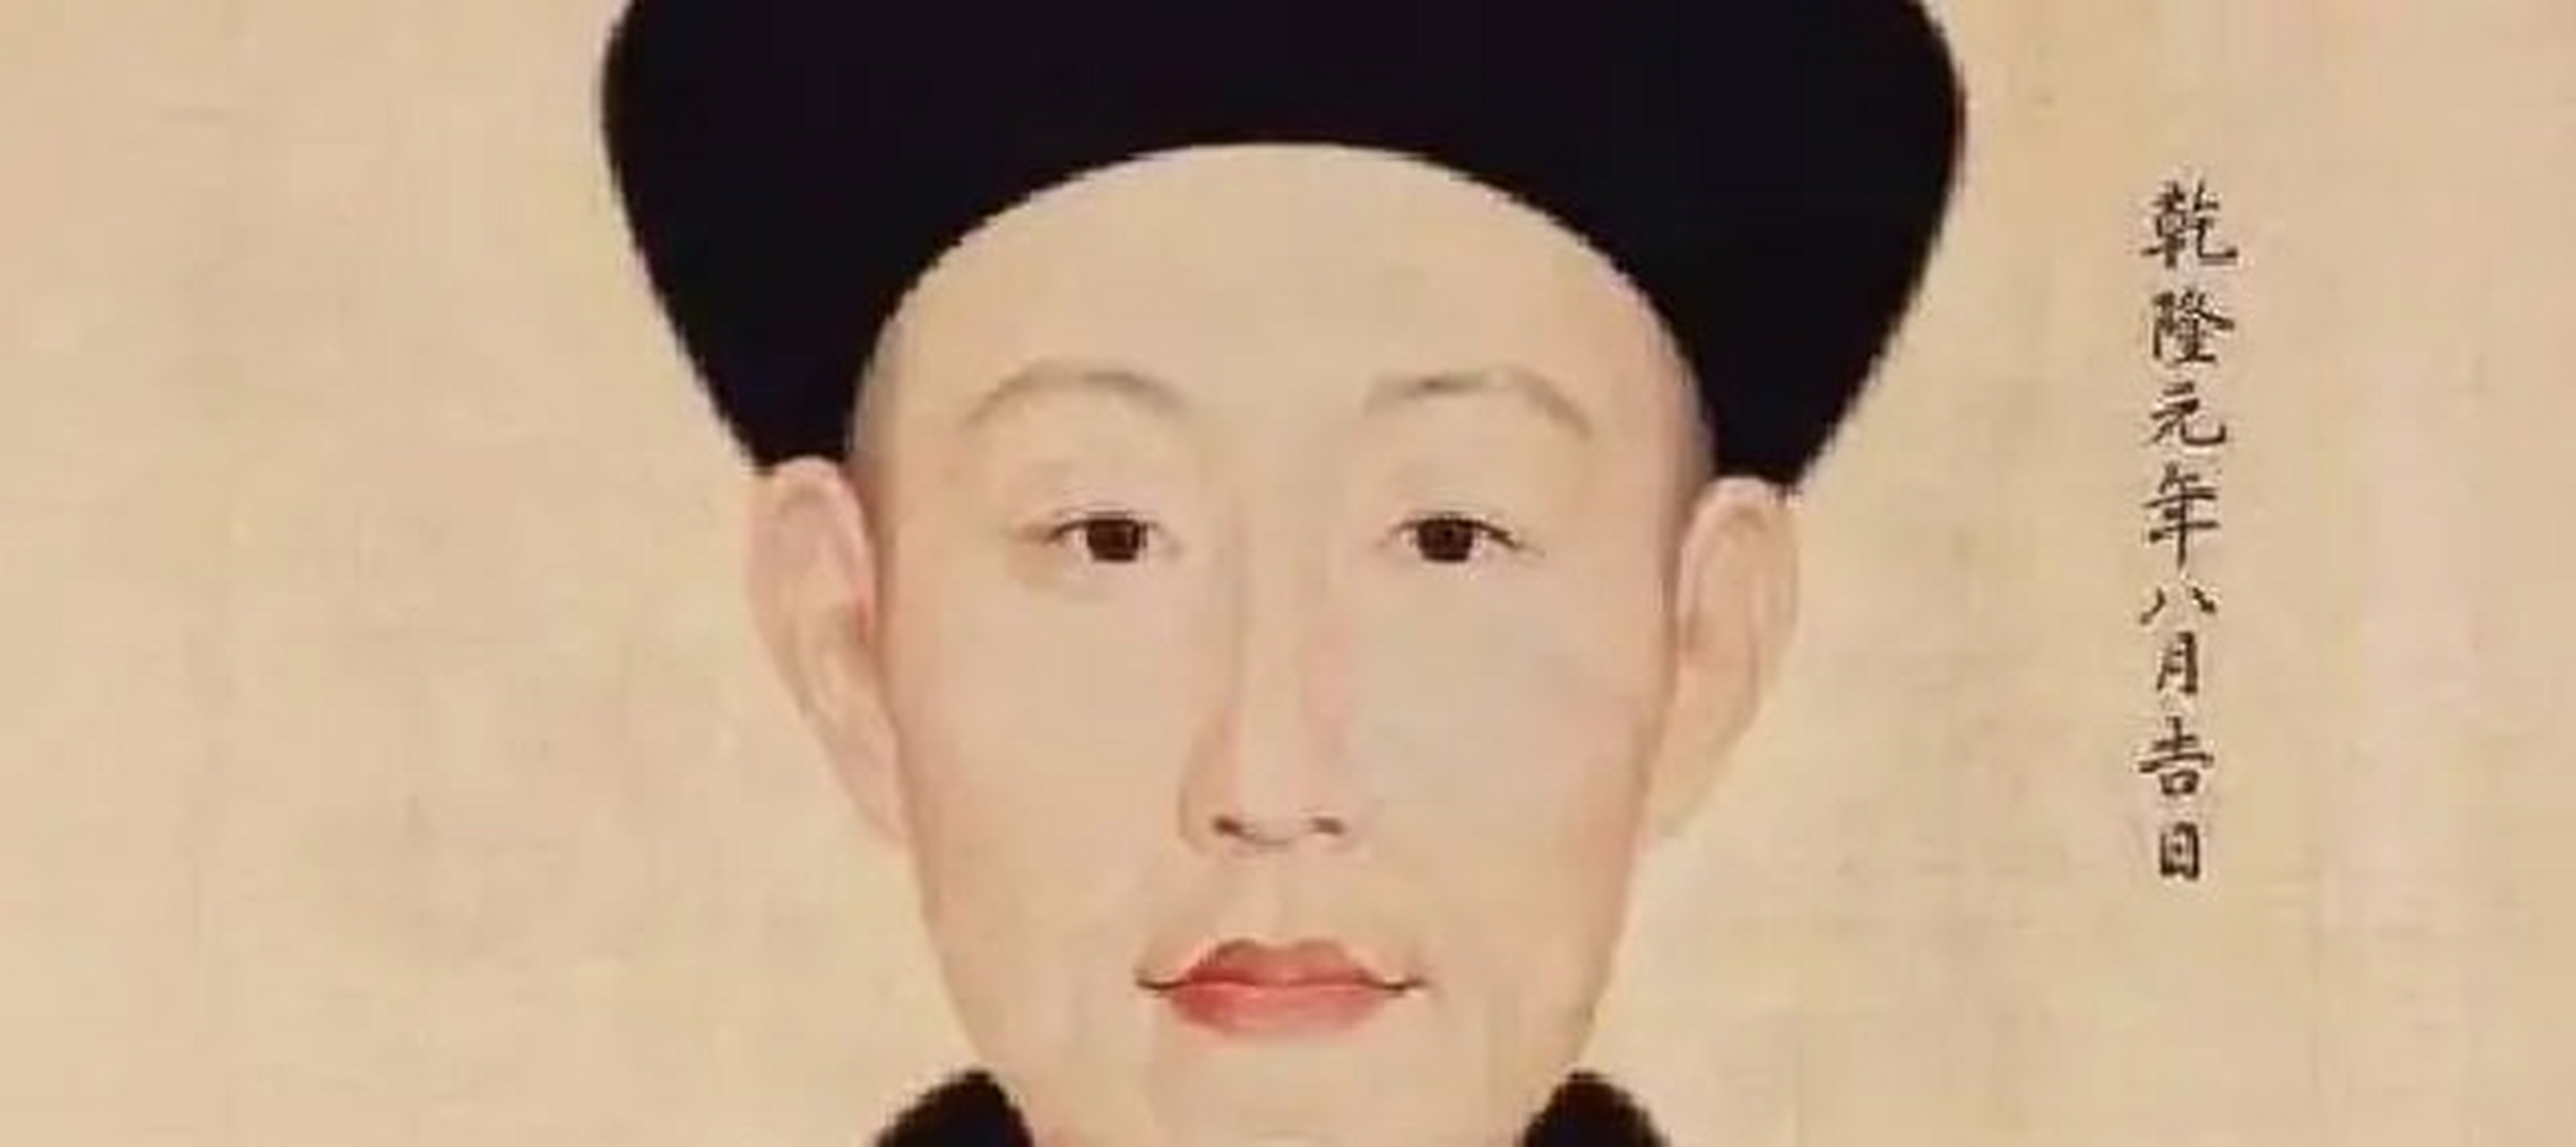 富察皇后的父亲名叫李荣保,是一位地地道道的满人,并且身份十分尊贵